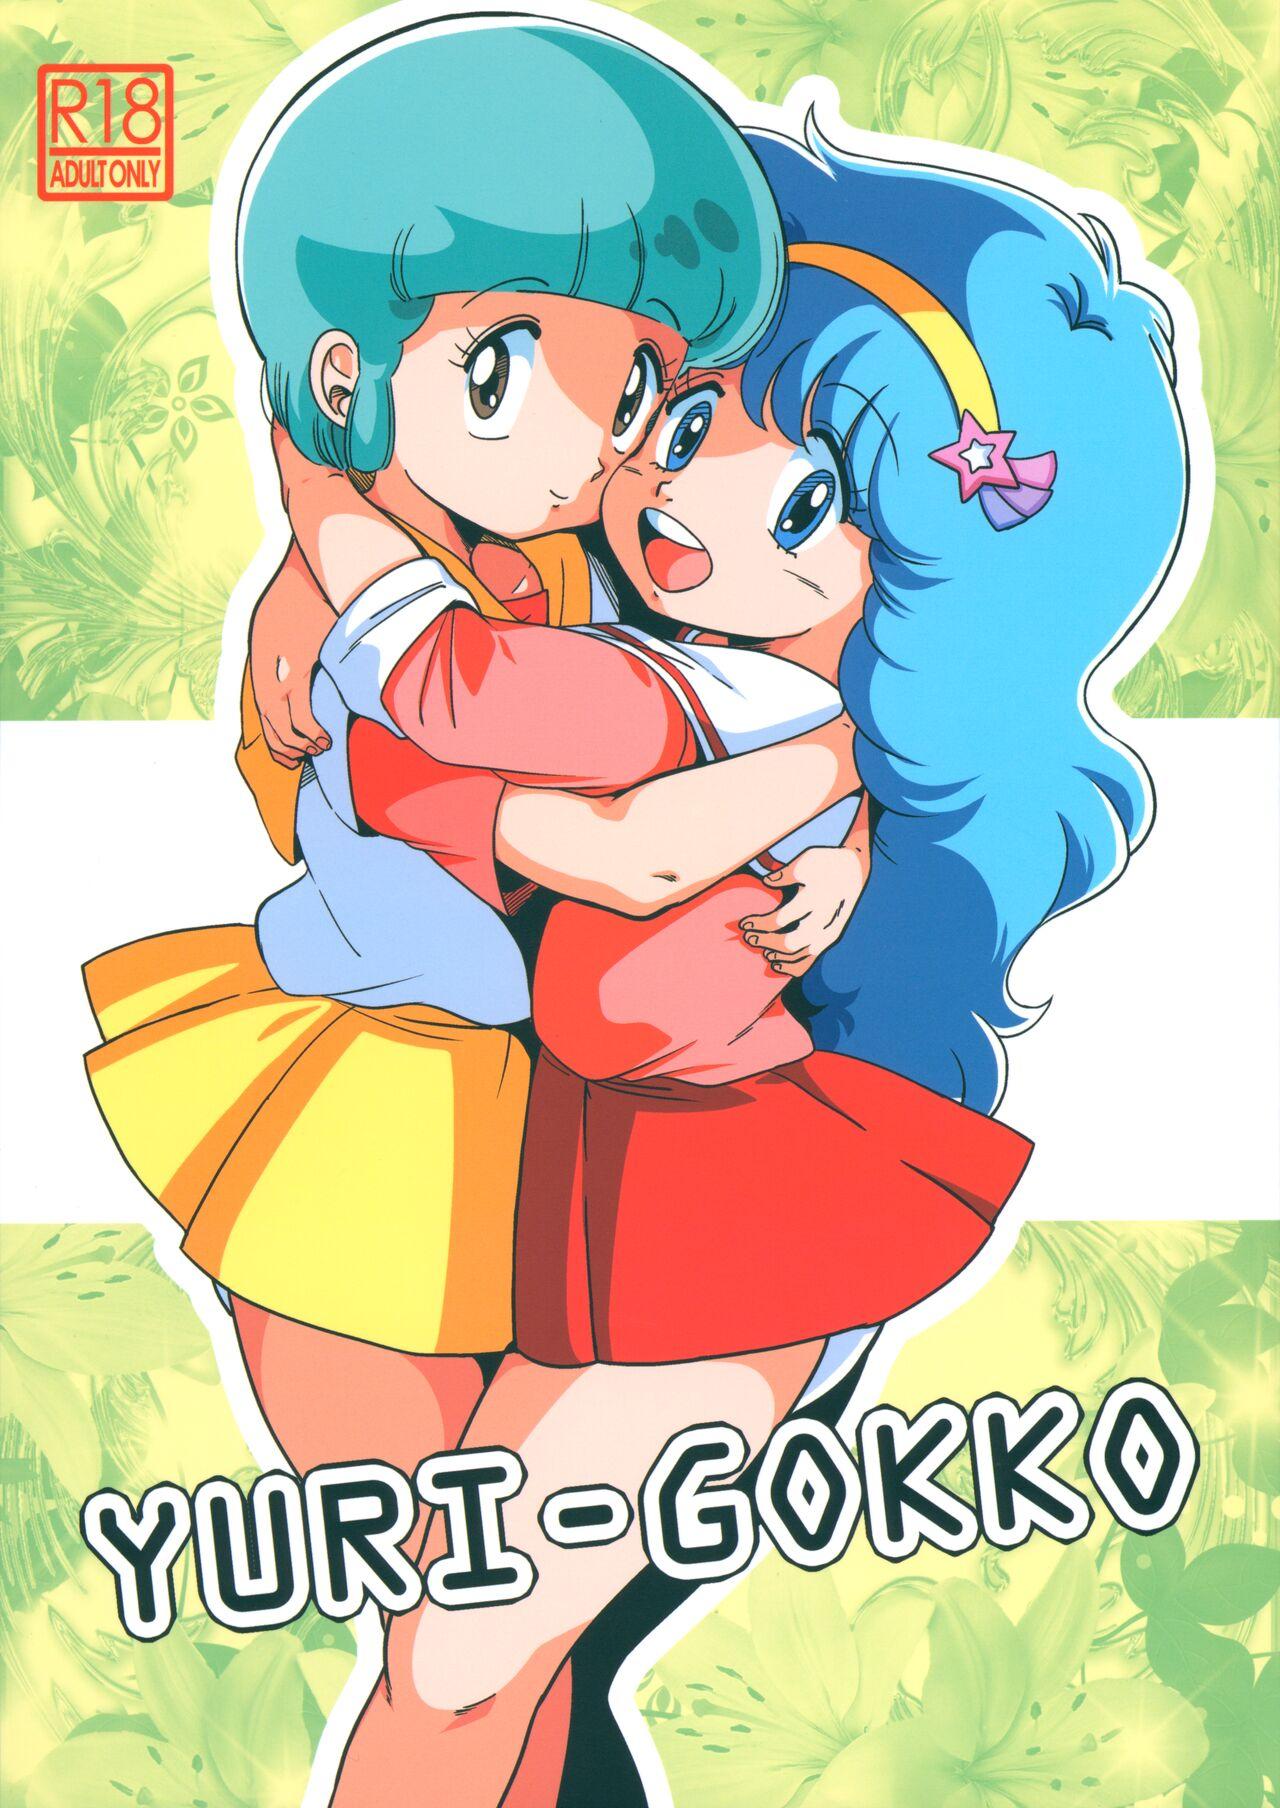 YURI-GOKKO 1